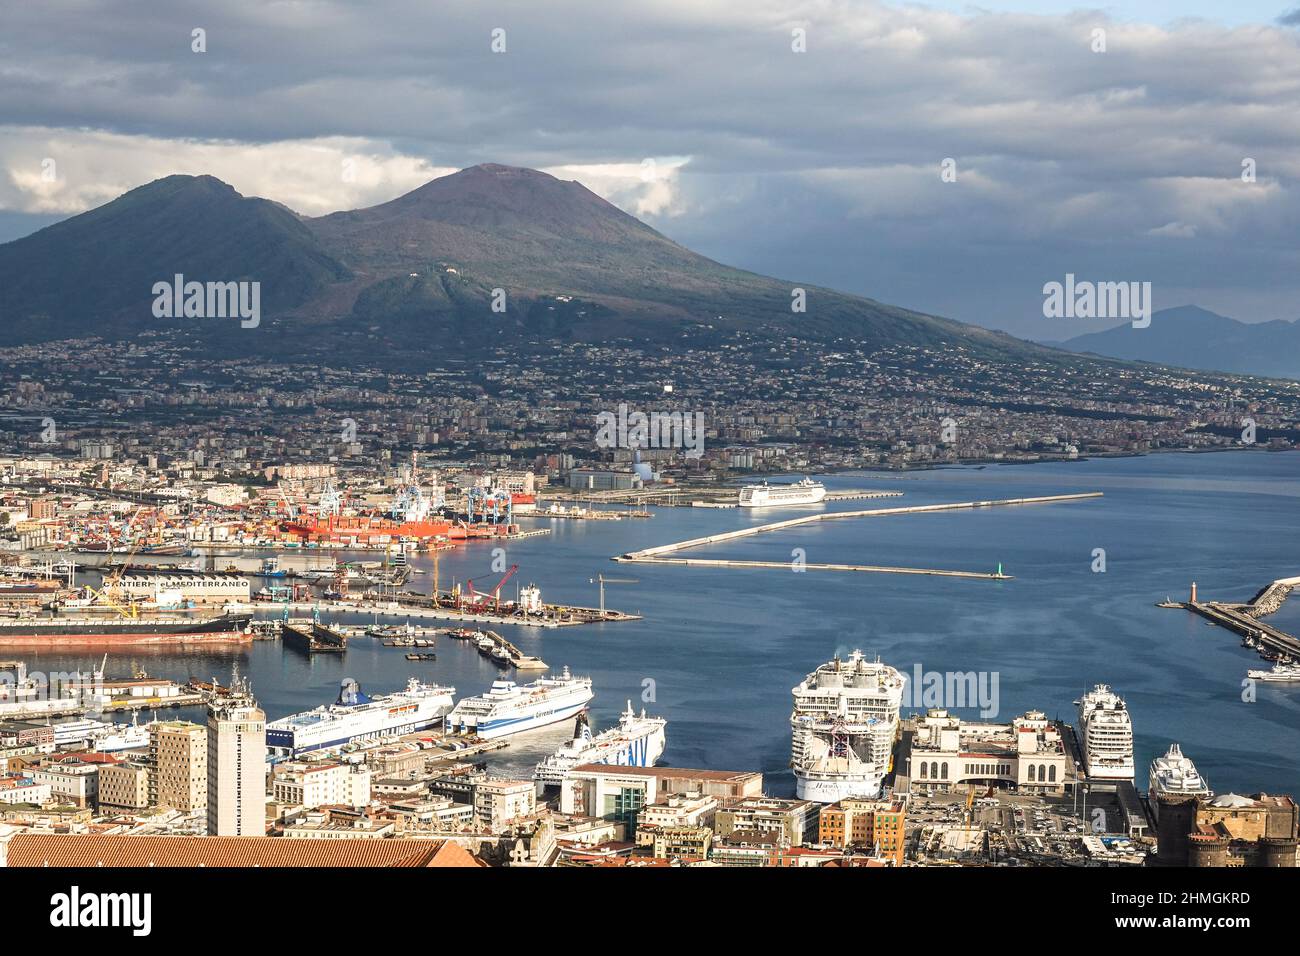 Napoli, Italia - 15 2021 de octubre: Vista aérea del puerto de Nápoles que alberga muchos barcos grandes como el barco de crucero Harmony of the Seas y gnv ferr Foto de stock